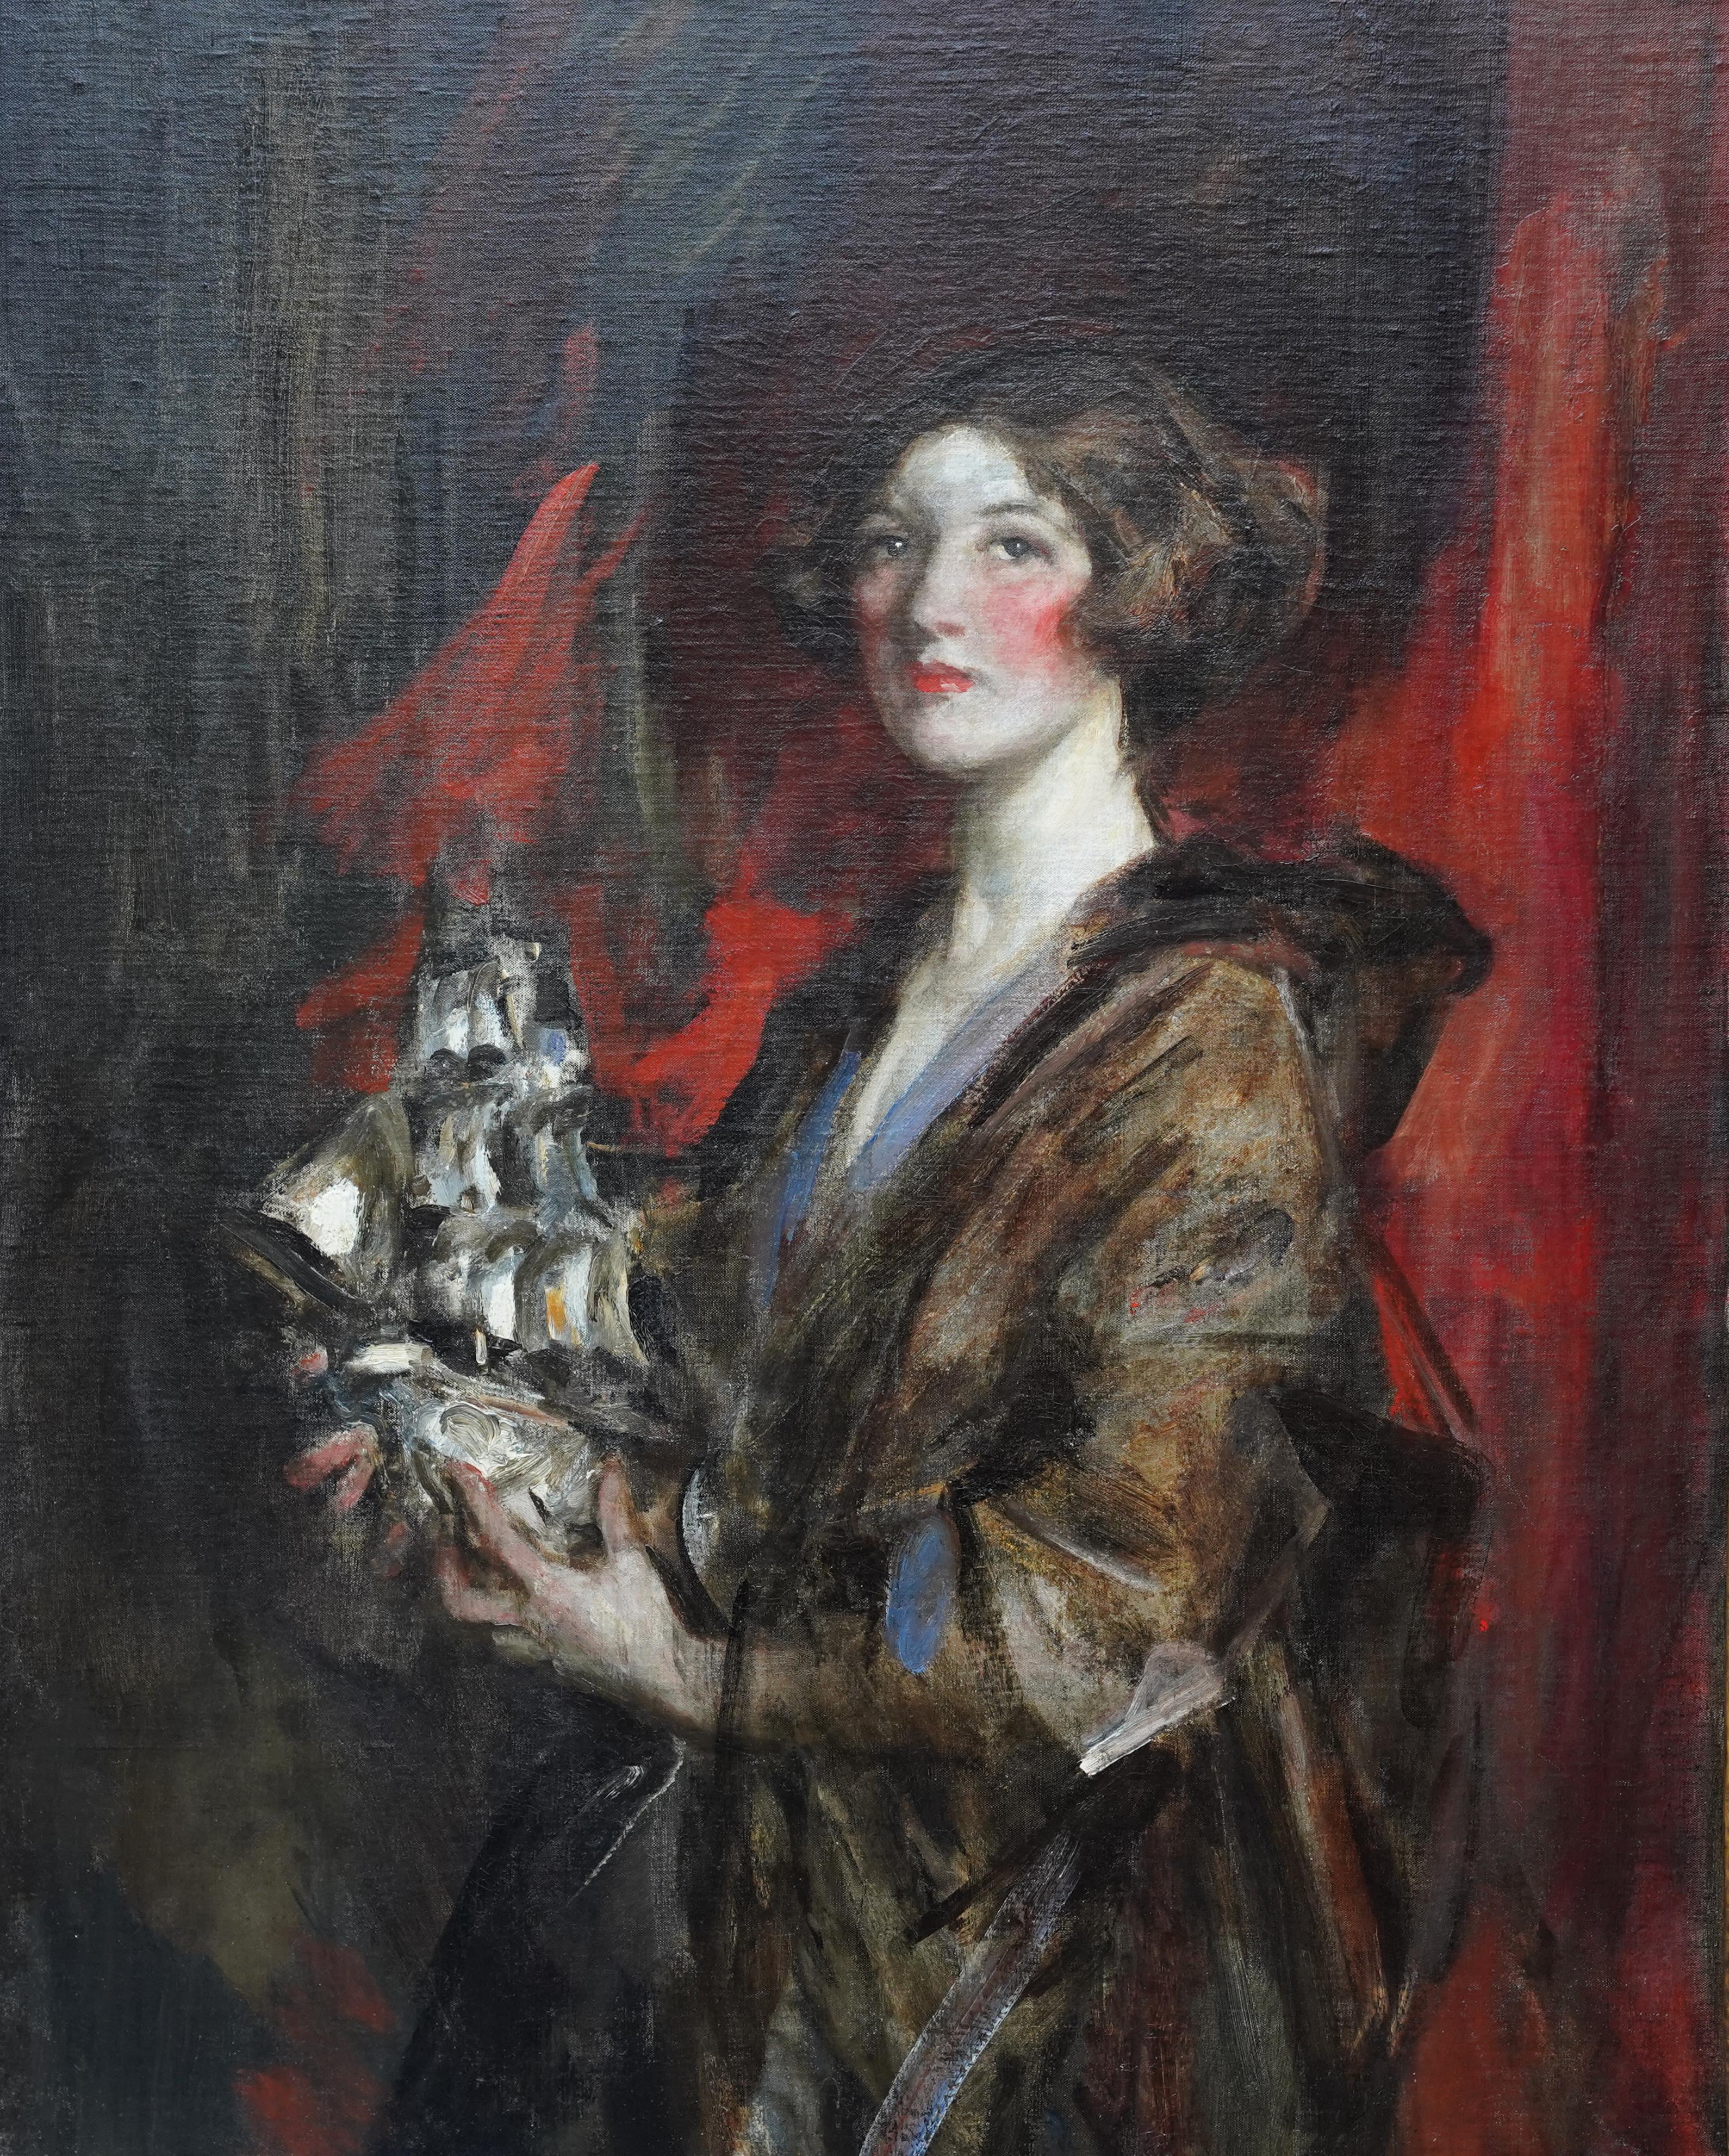 Porträt von Kitty und Silberschiff - Britisches edwardianisches impressionistisches Ölgemälde – Painting von James Jebusa Shannon